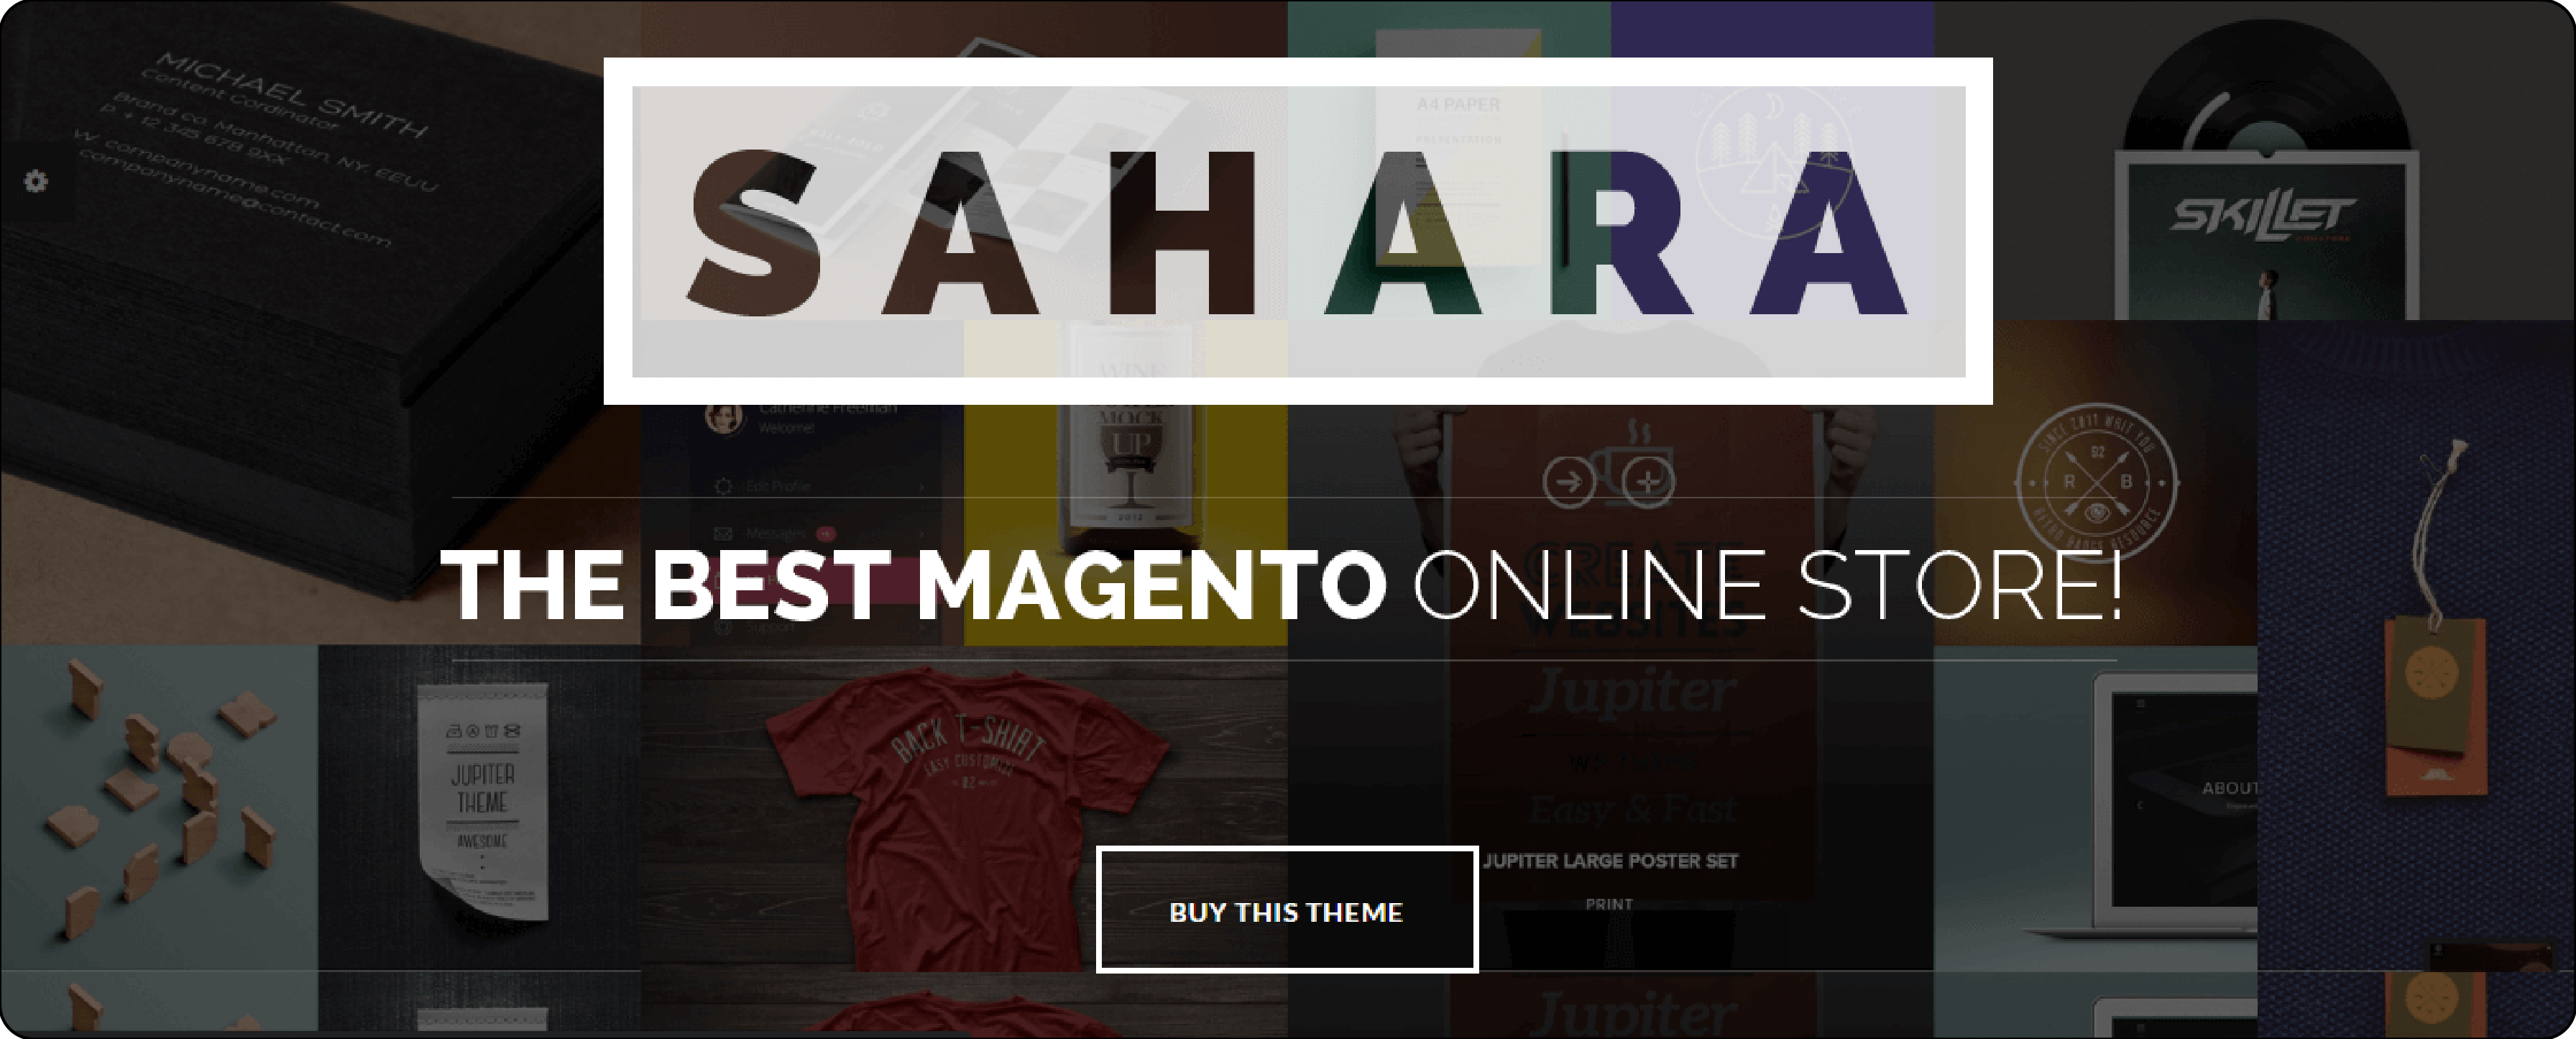 Sahara Magento Web Hosting Theme